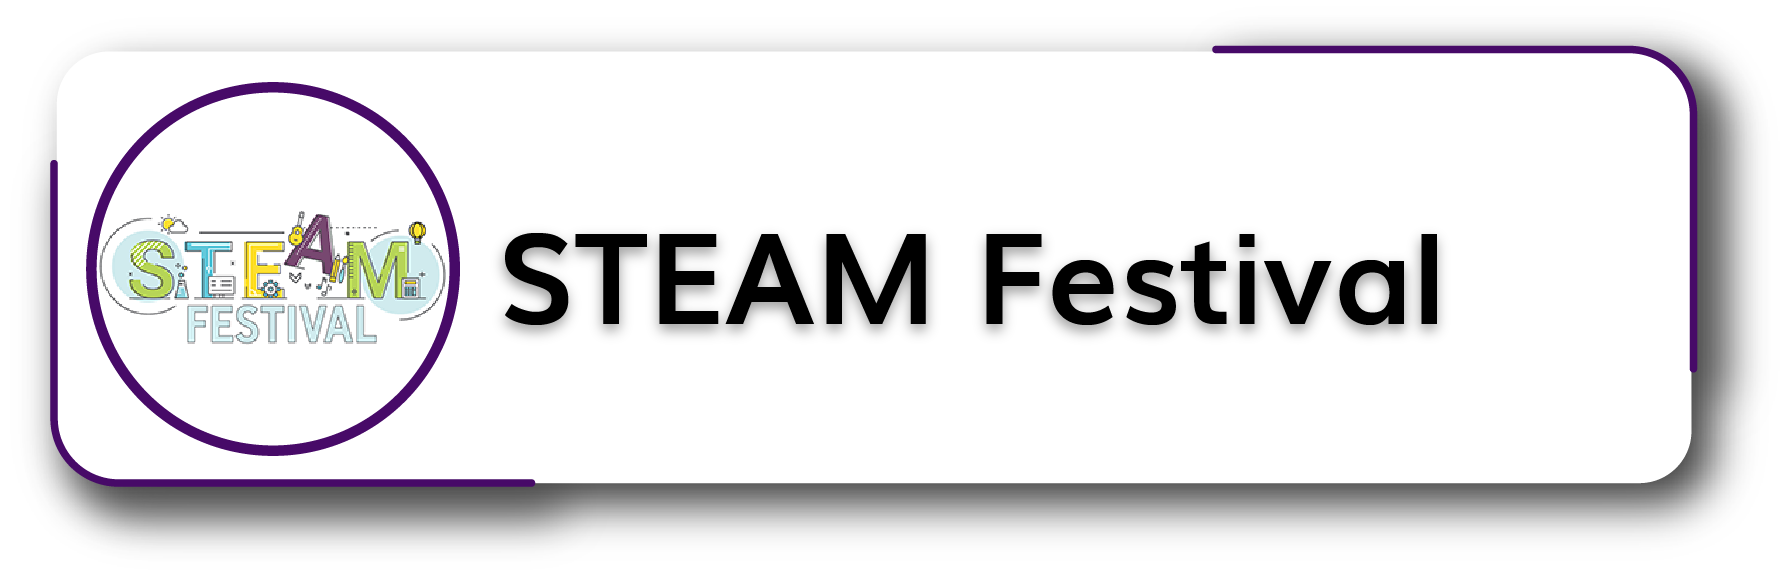 STEAM Festival Button